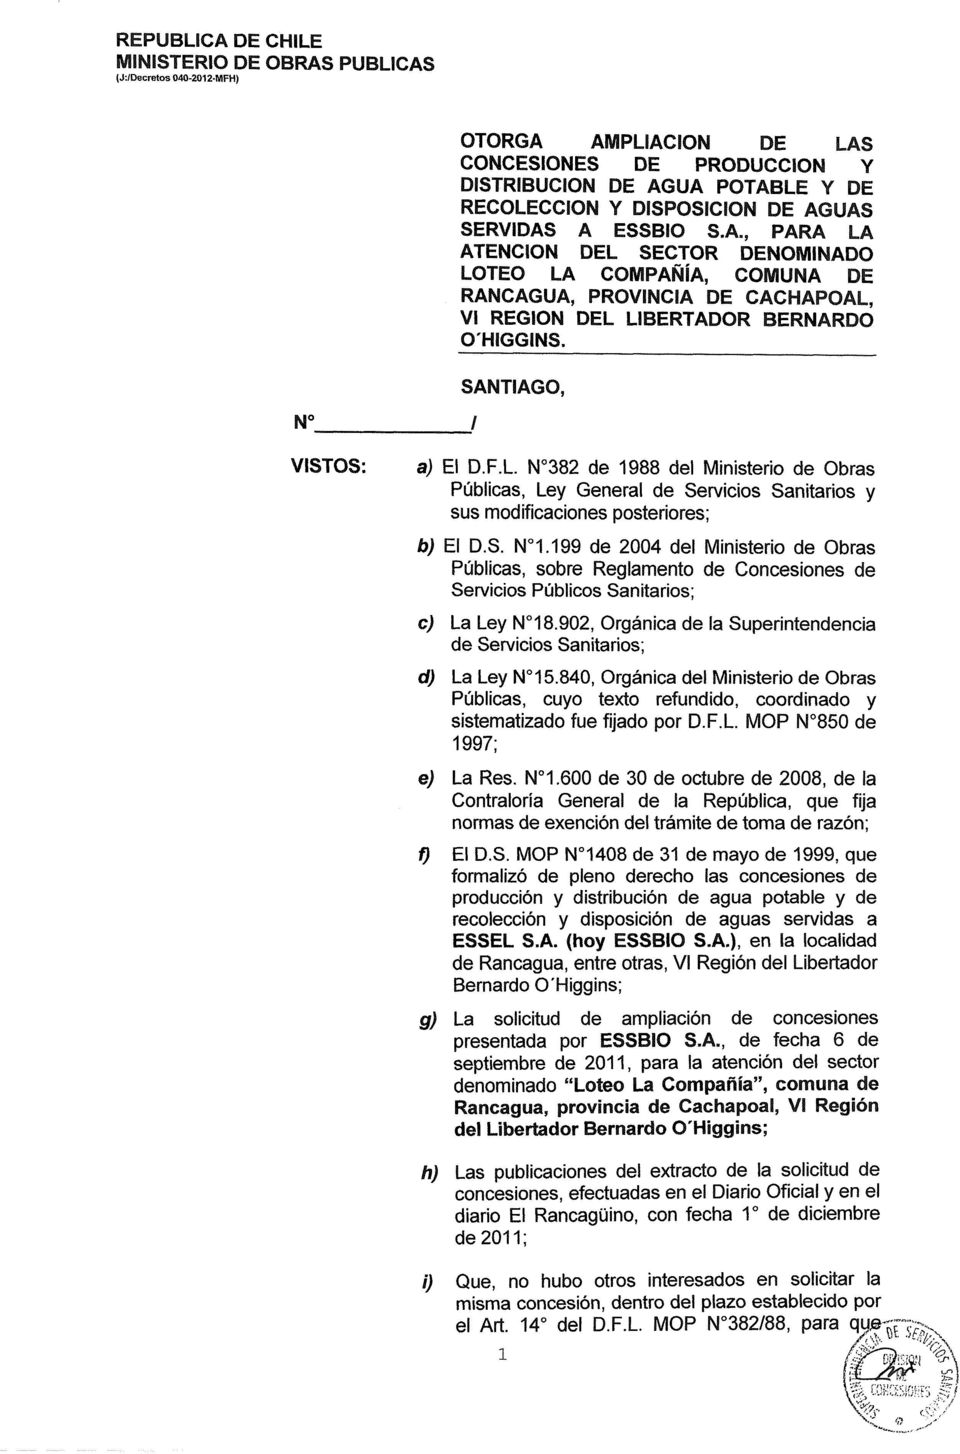 SANTIAGO, VISTOS: a) El D.F.L N 382 de 1988 del Ministerio de Obras Públicas, Ley General de Servicios Sanitarios y sus modificaciones posteriores; b) El D.S. N 1.